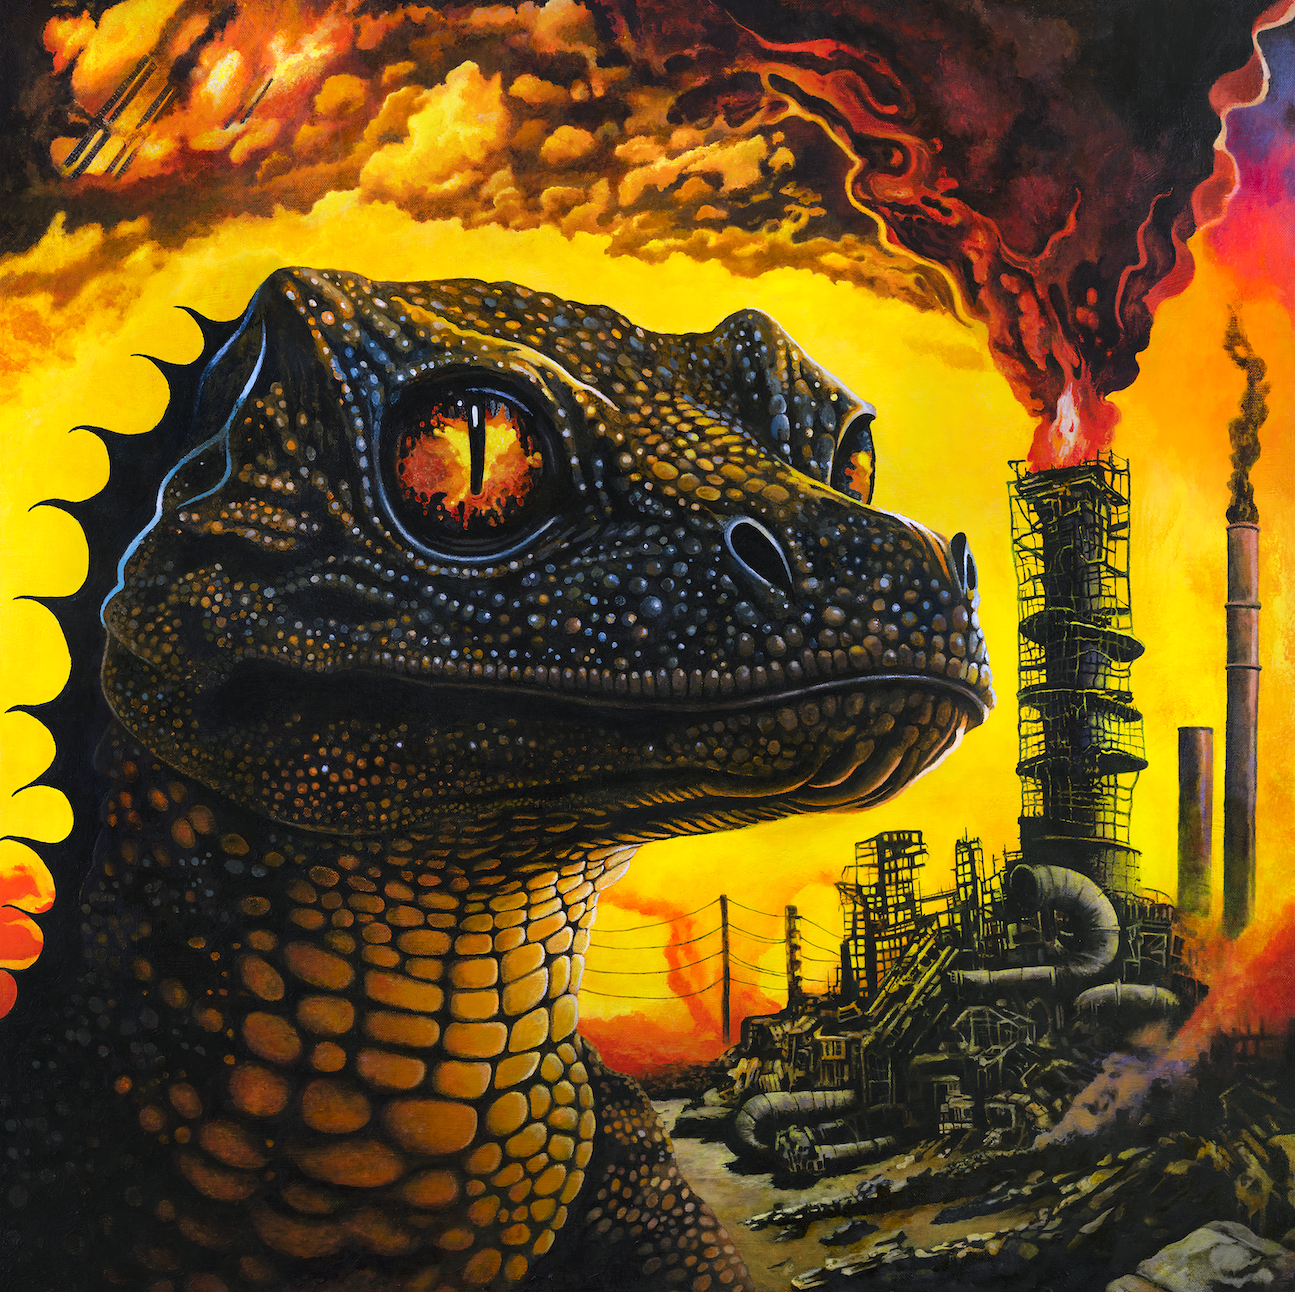 King Gizzard & the Lizard Wizard - PetroDragonic Apocalypse | Buy the Vinyl LP